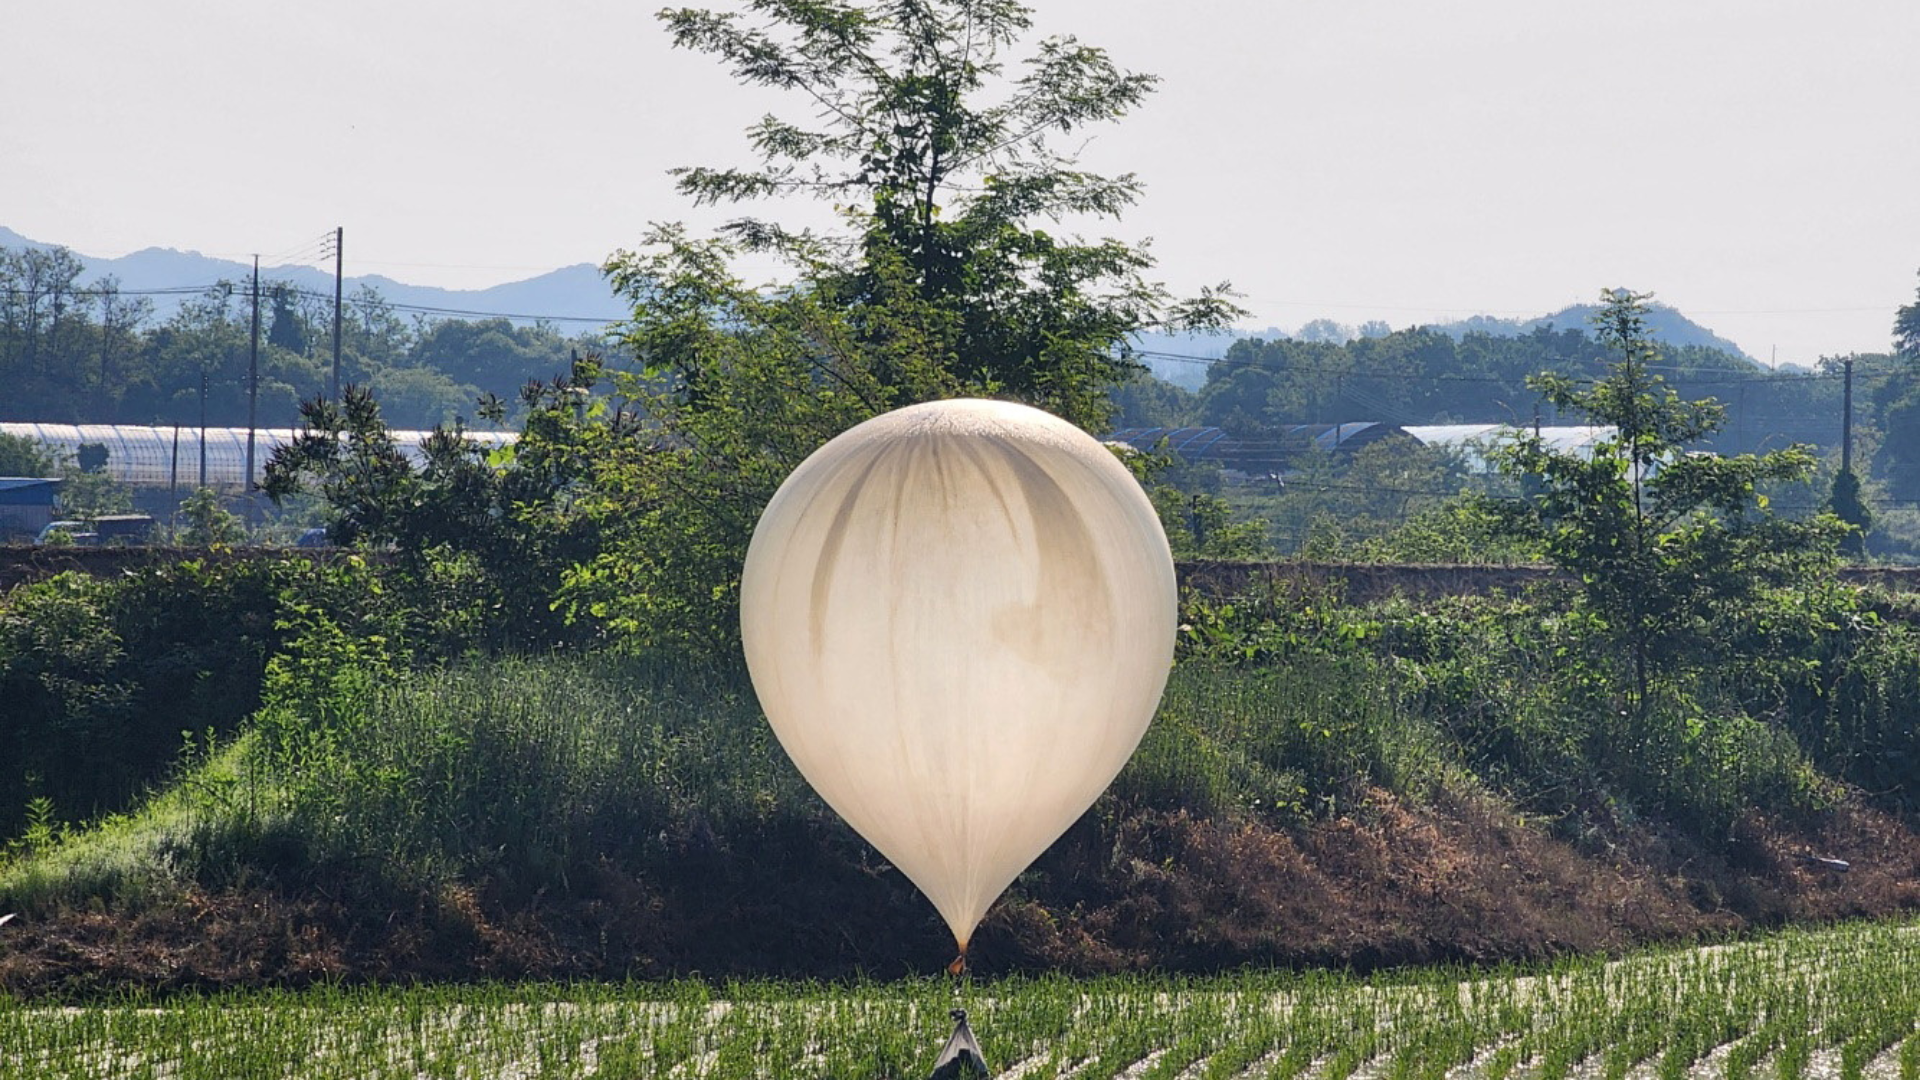 North Korea Sends Over 600 More Trash Balloons Into South Korea